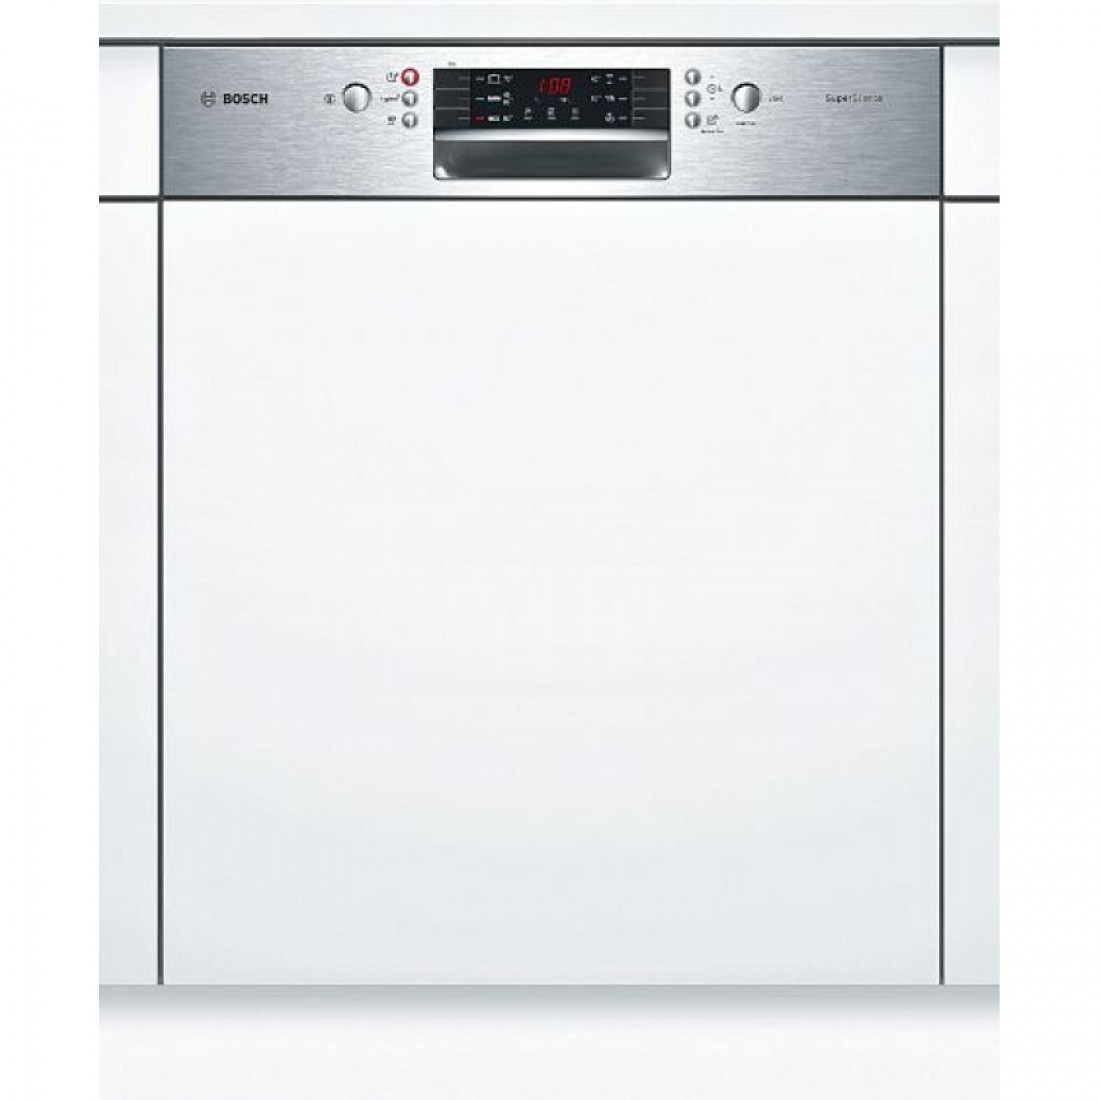 Встраиваемые посудомоечные бош 60 см купить. Посудомоечная машина Siemens SN 536s01 ke. Посудомоечная машина Bosch SMI 40m65. Bosch SMI 46ks00 t. Посудомоечная машина Bosch SMI 46ks01 e.